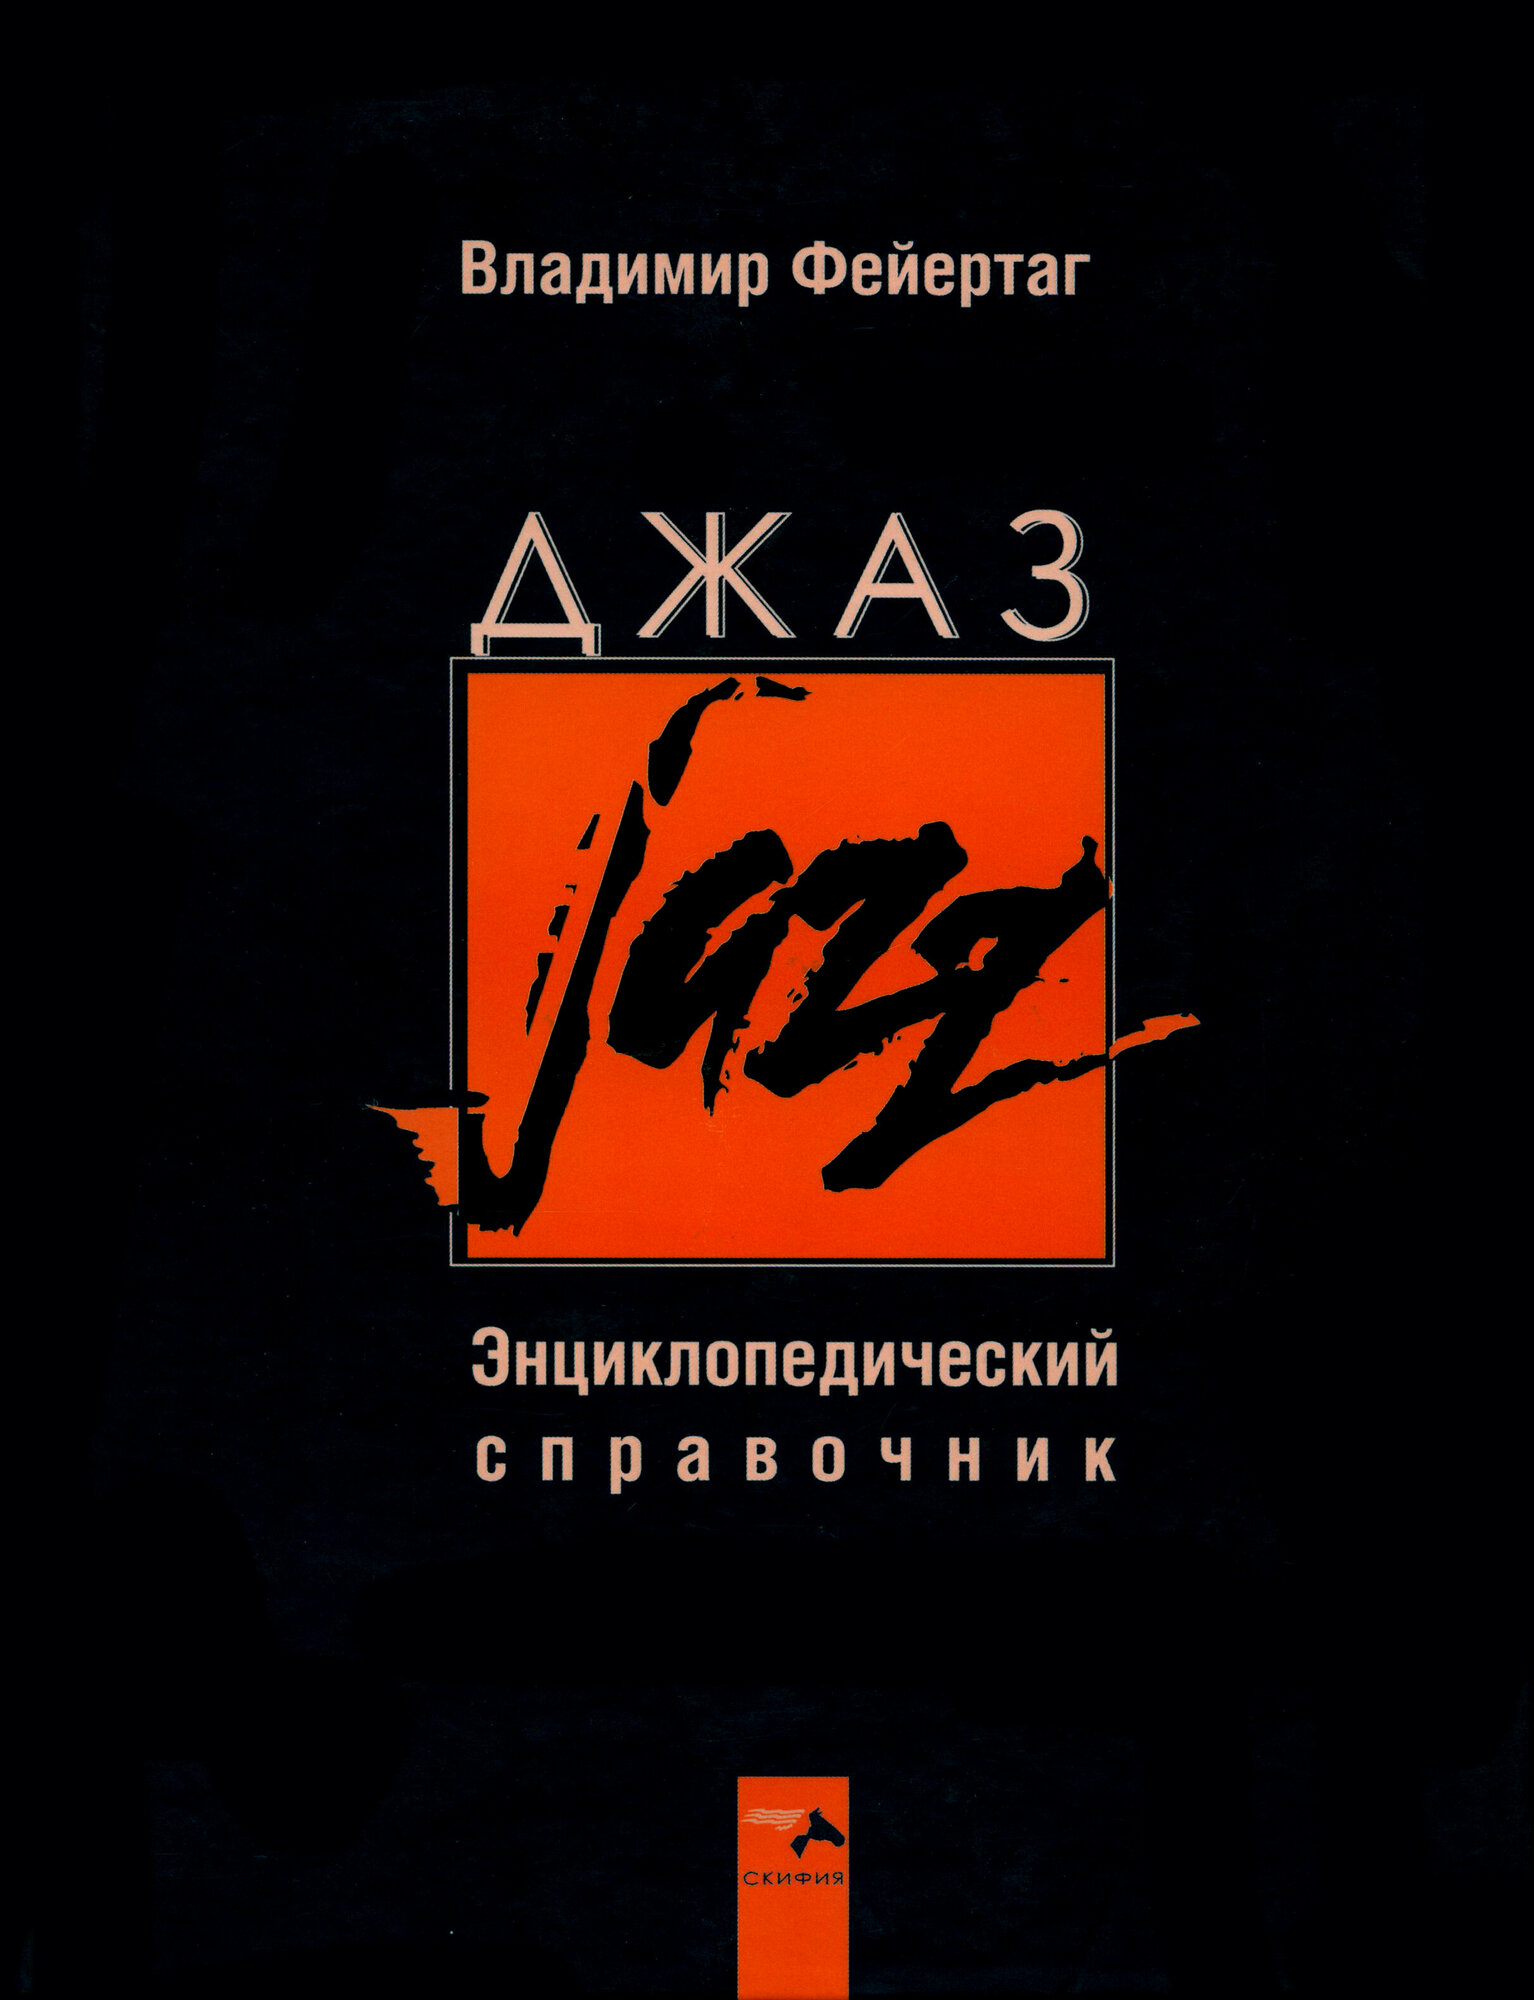 Джаз Энциклопедический справочник - фото №5